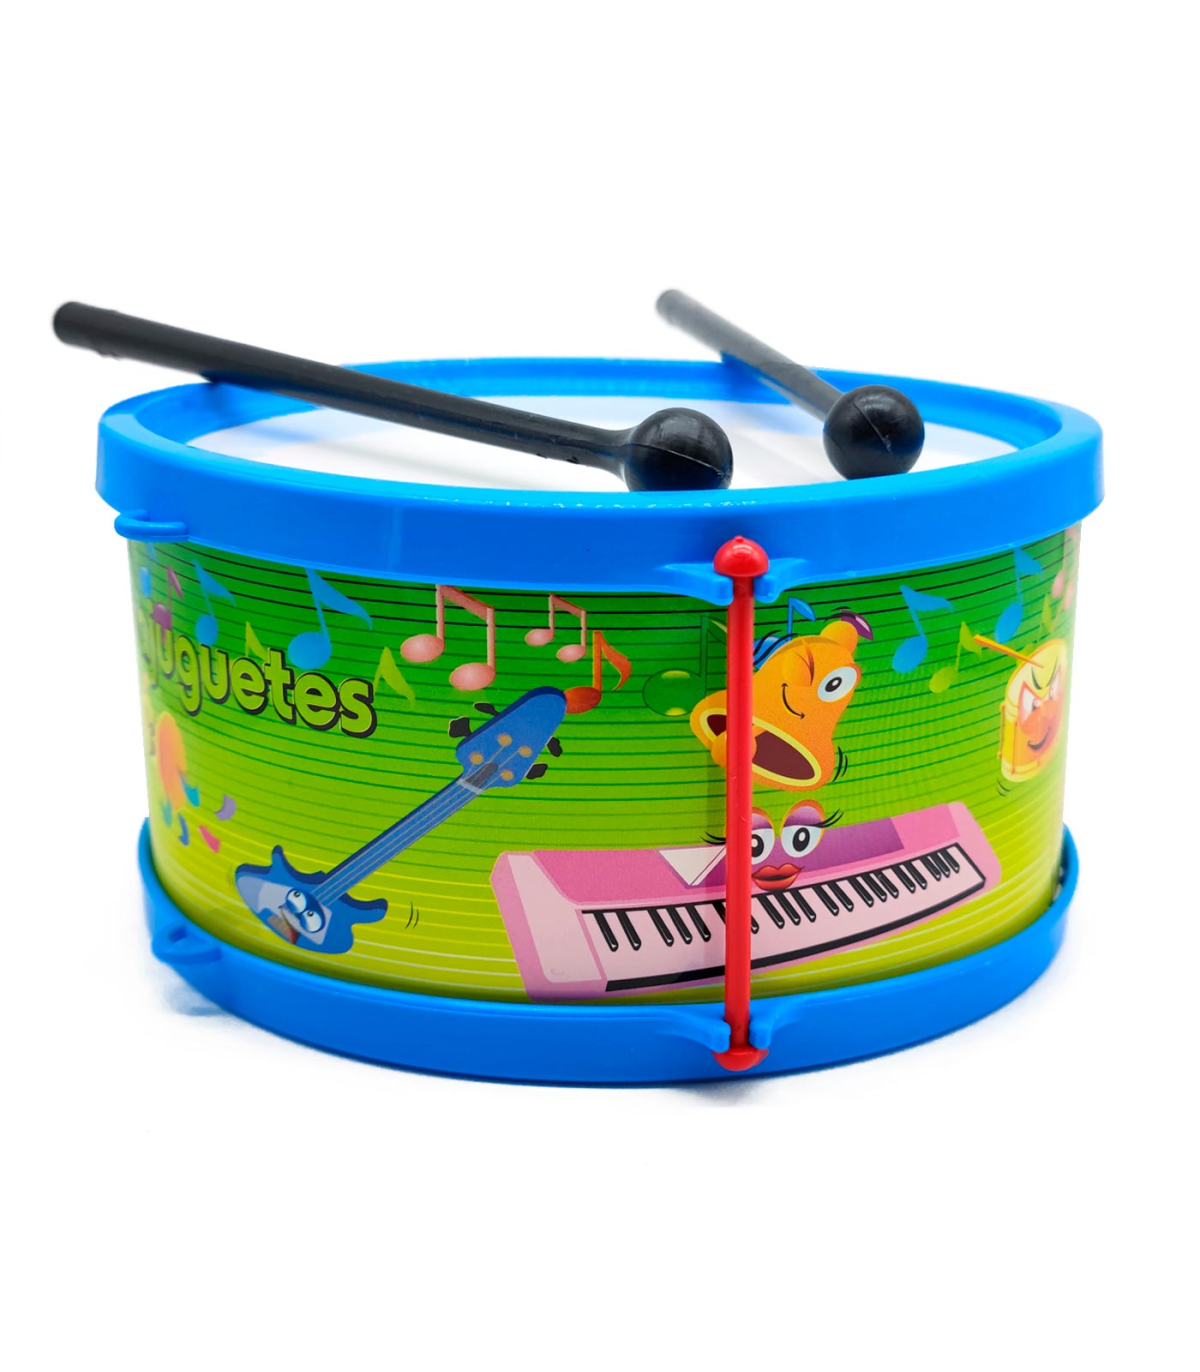 Instrumentos Musicales De Juguete Para Bebé